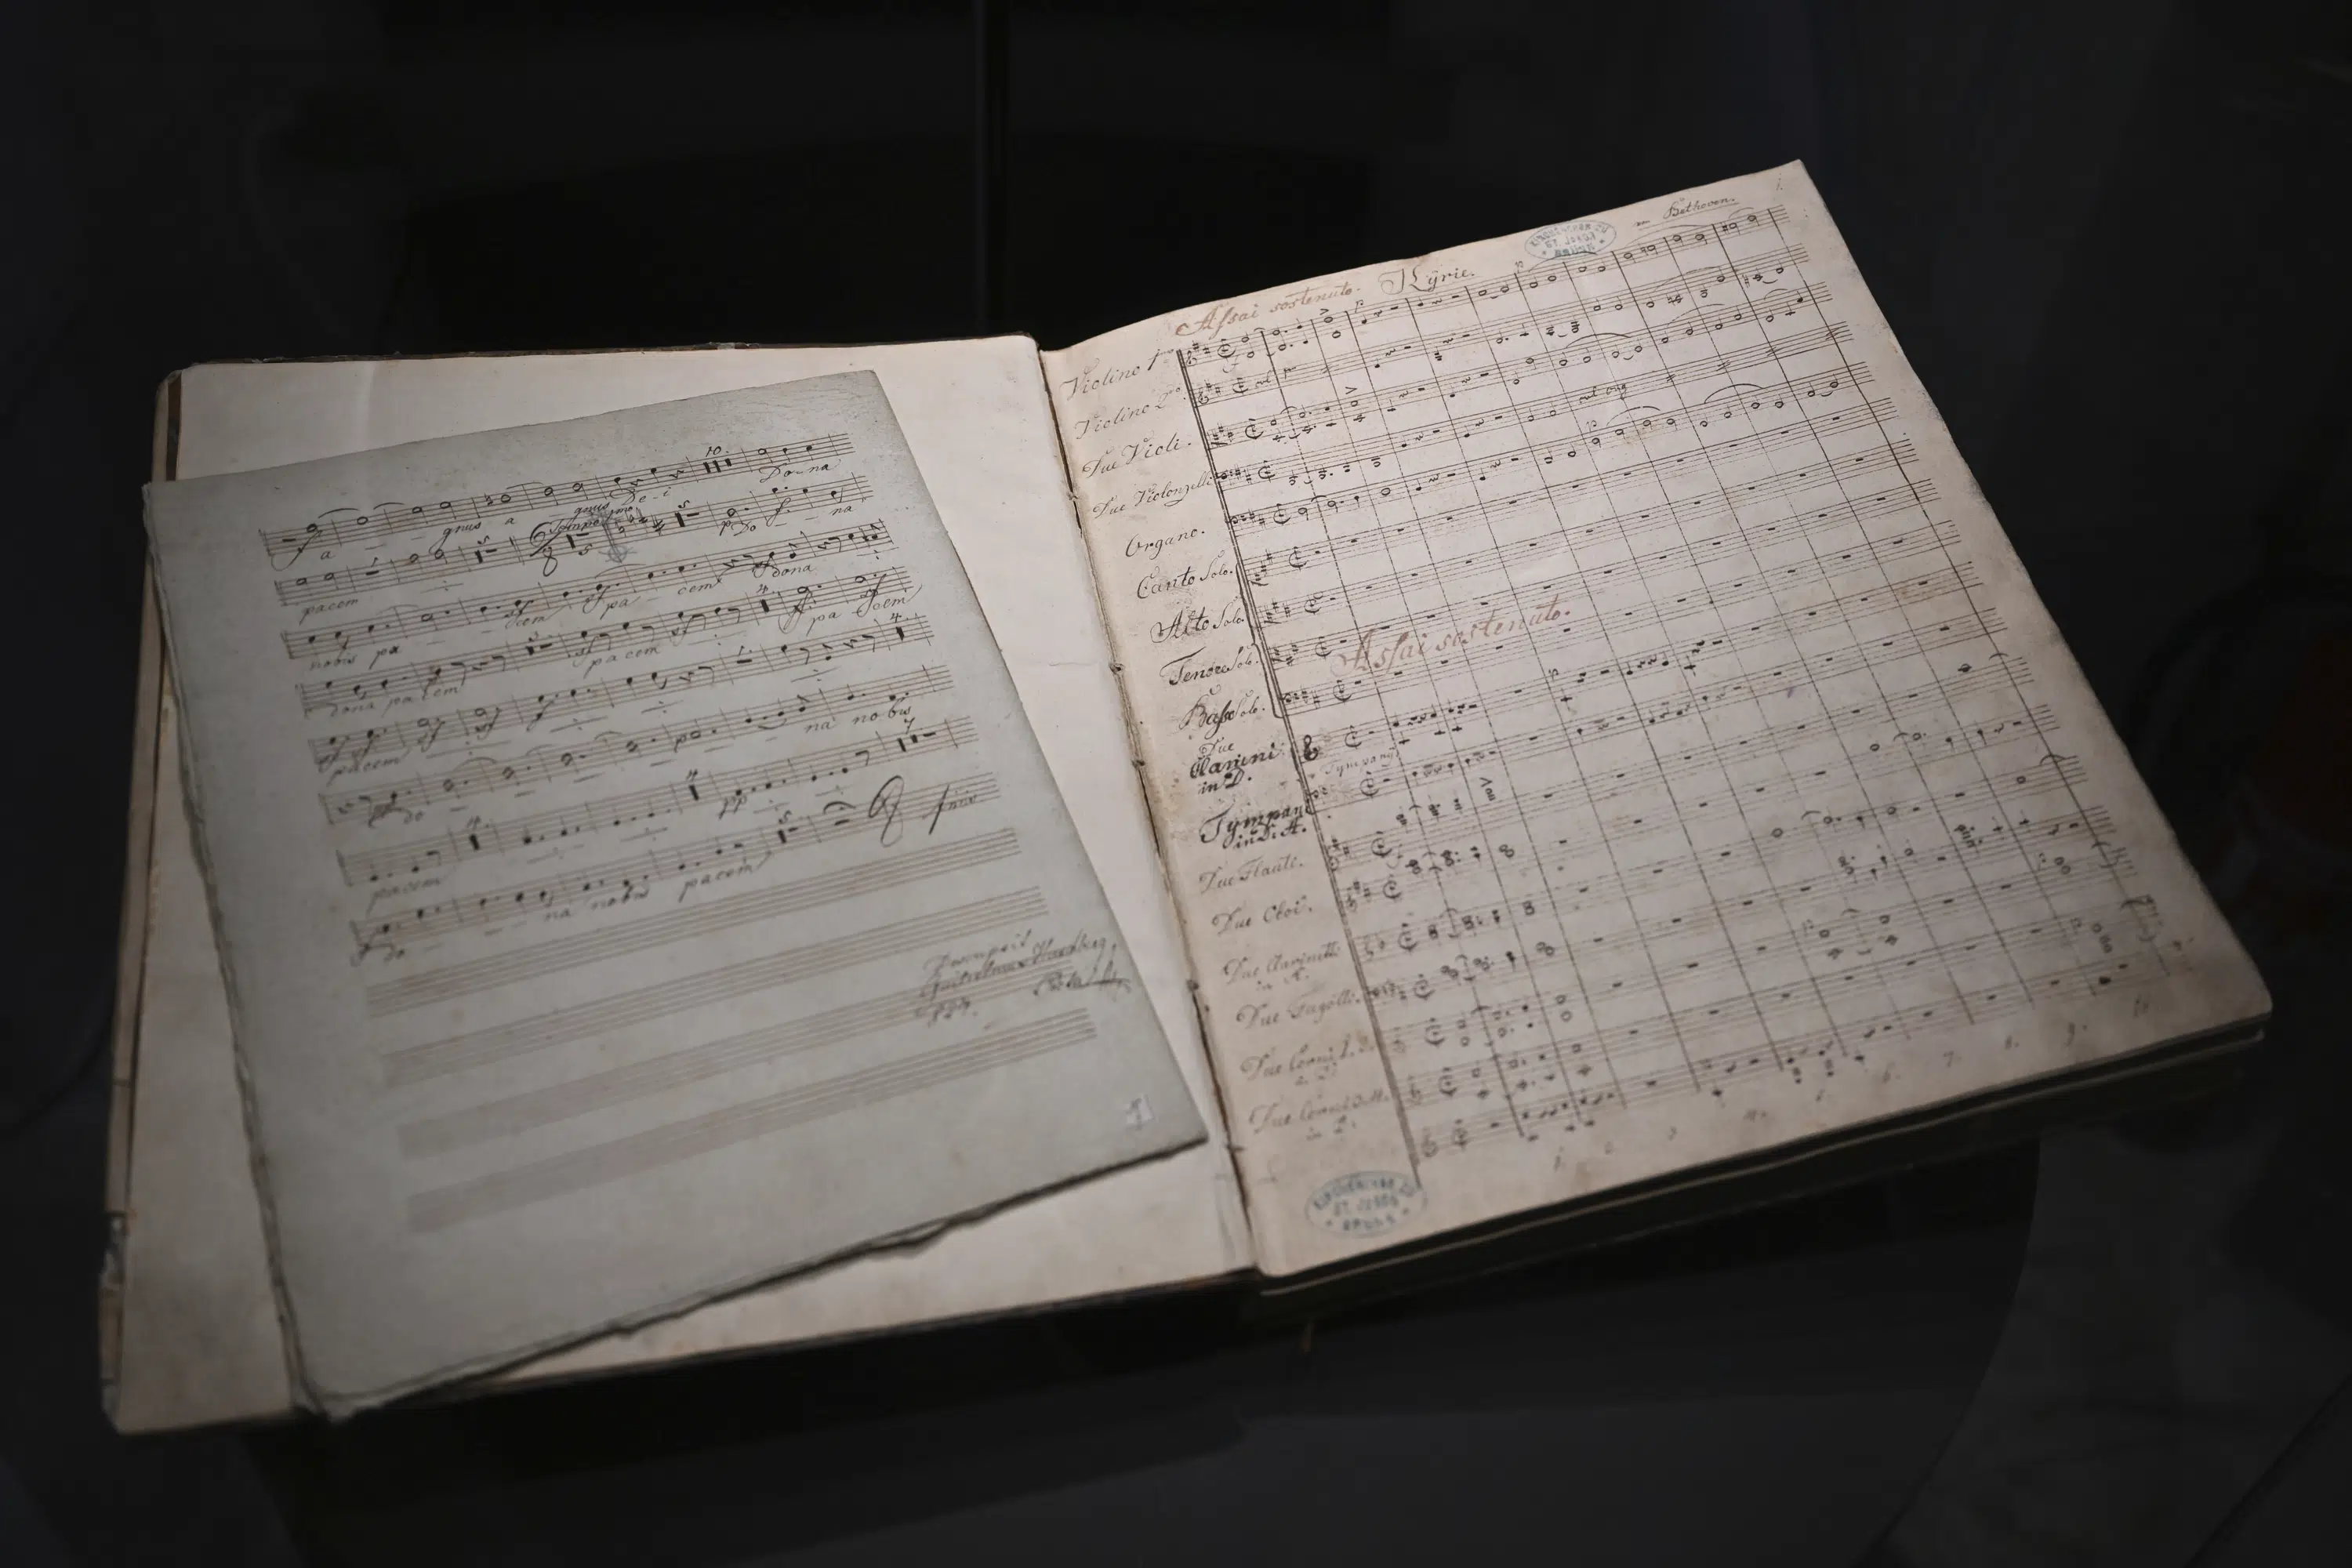 České muzeum vrací původní Beethovenovu partituru dědicům